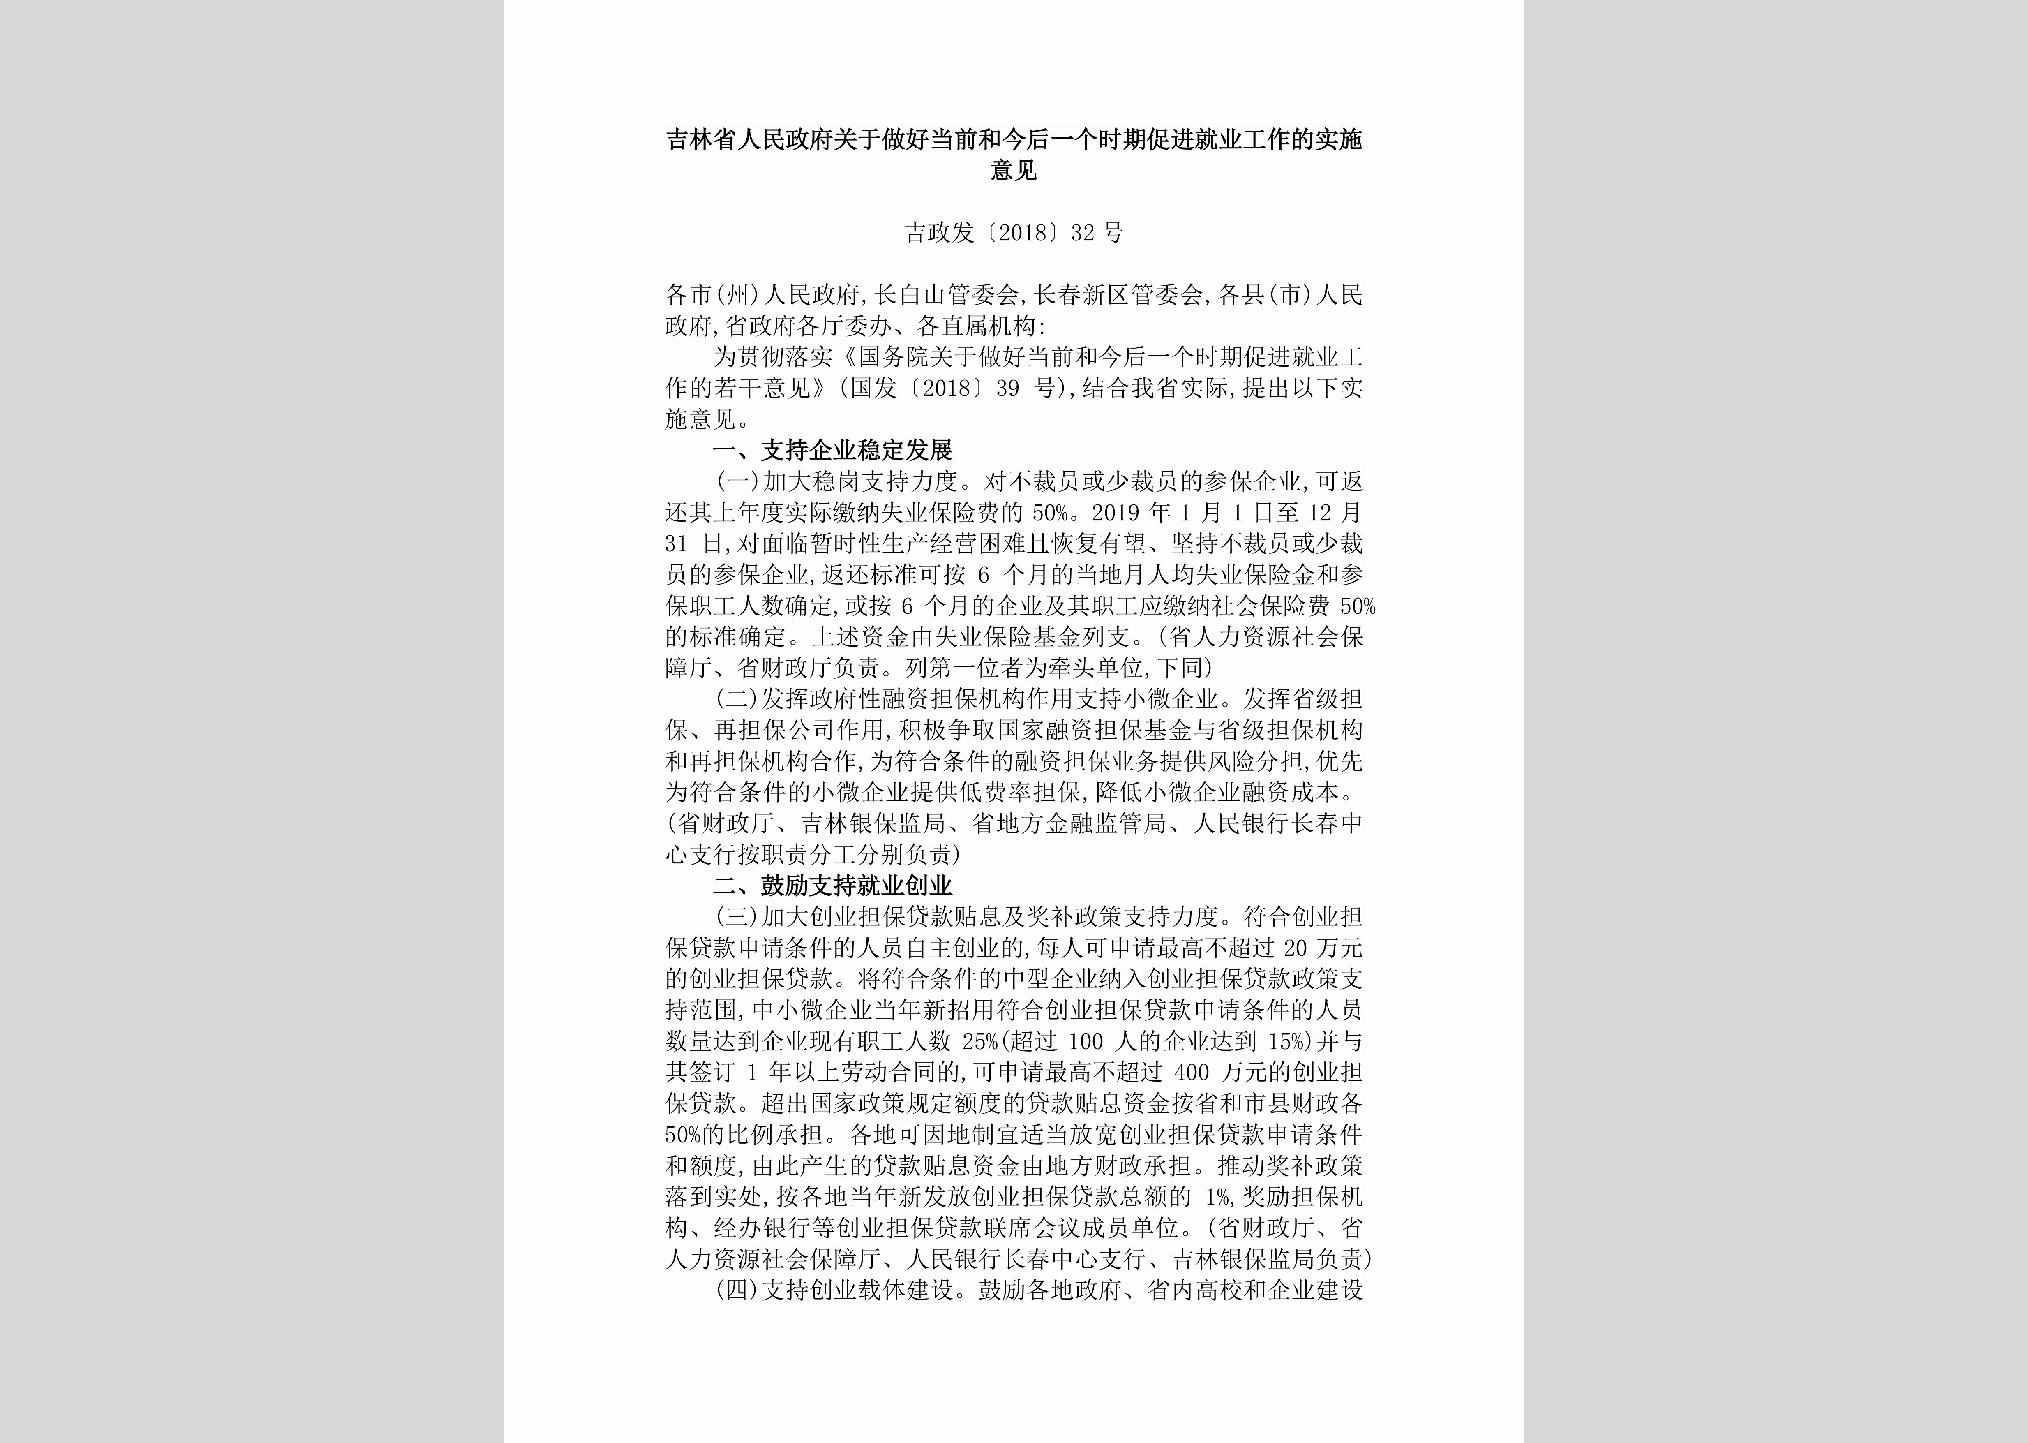 晋政发[2018]32号：山西省人民政府关于2018年实施乡村振兴若干政策措施的通知